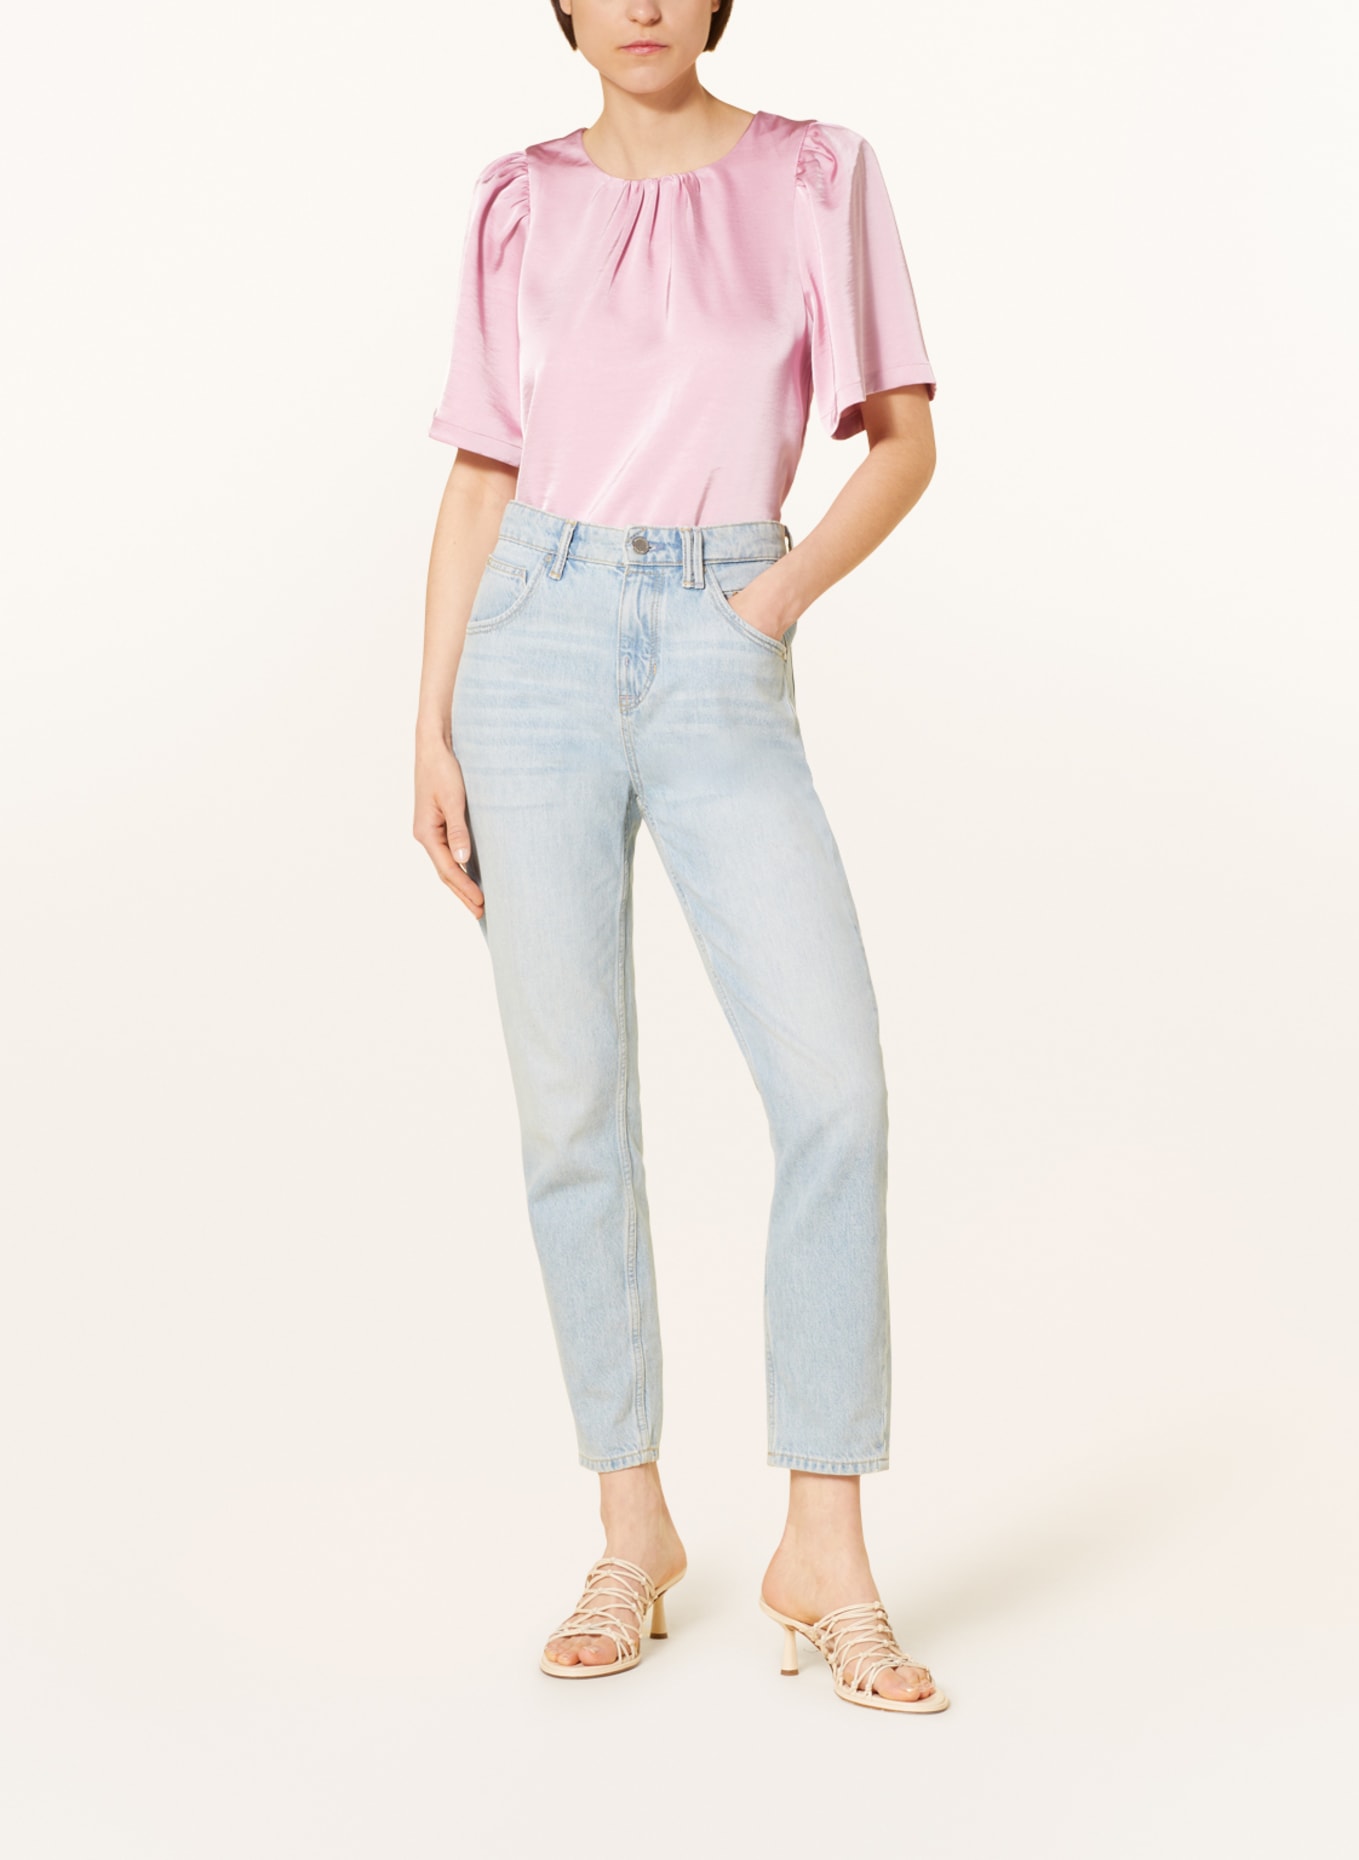 NEO NOIR Shirt blouse FLORINA, Color: PINK (Image 2)